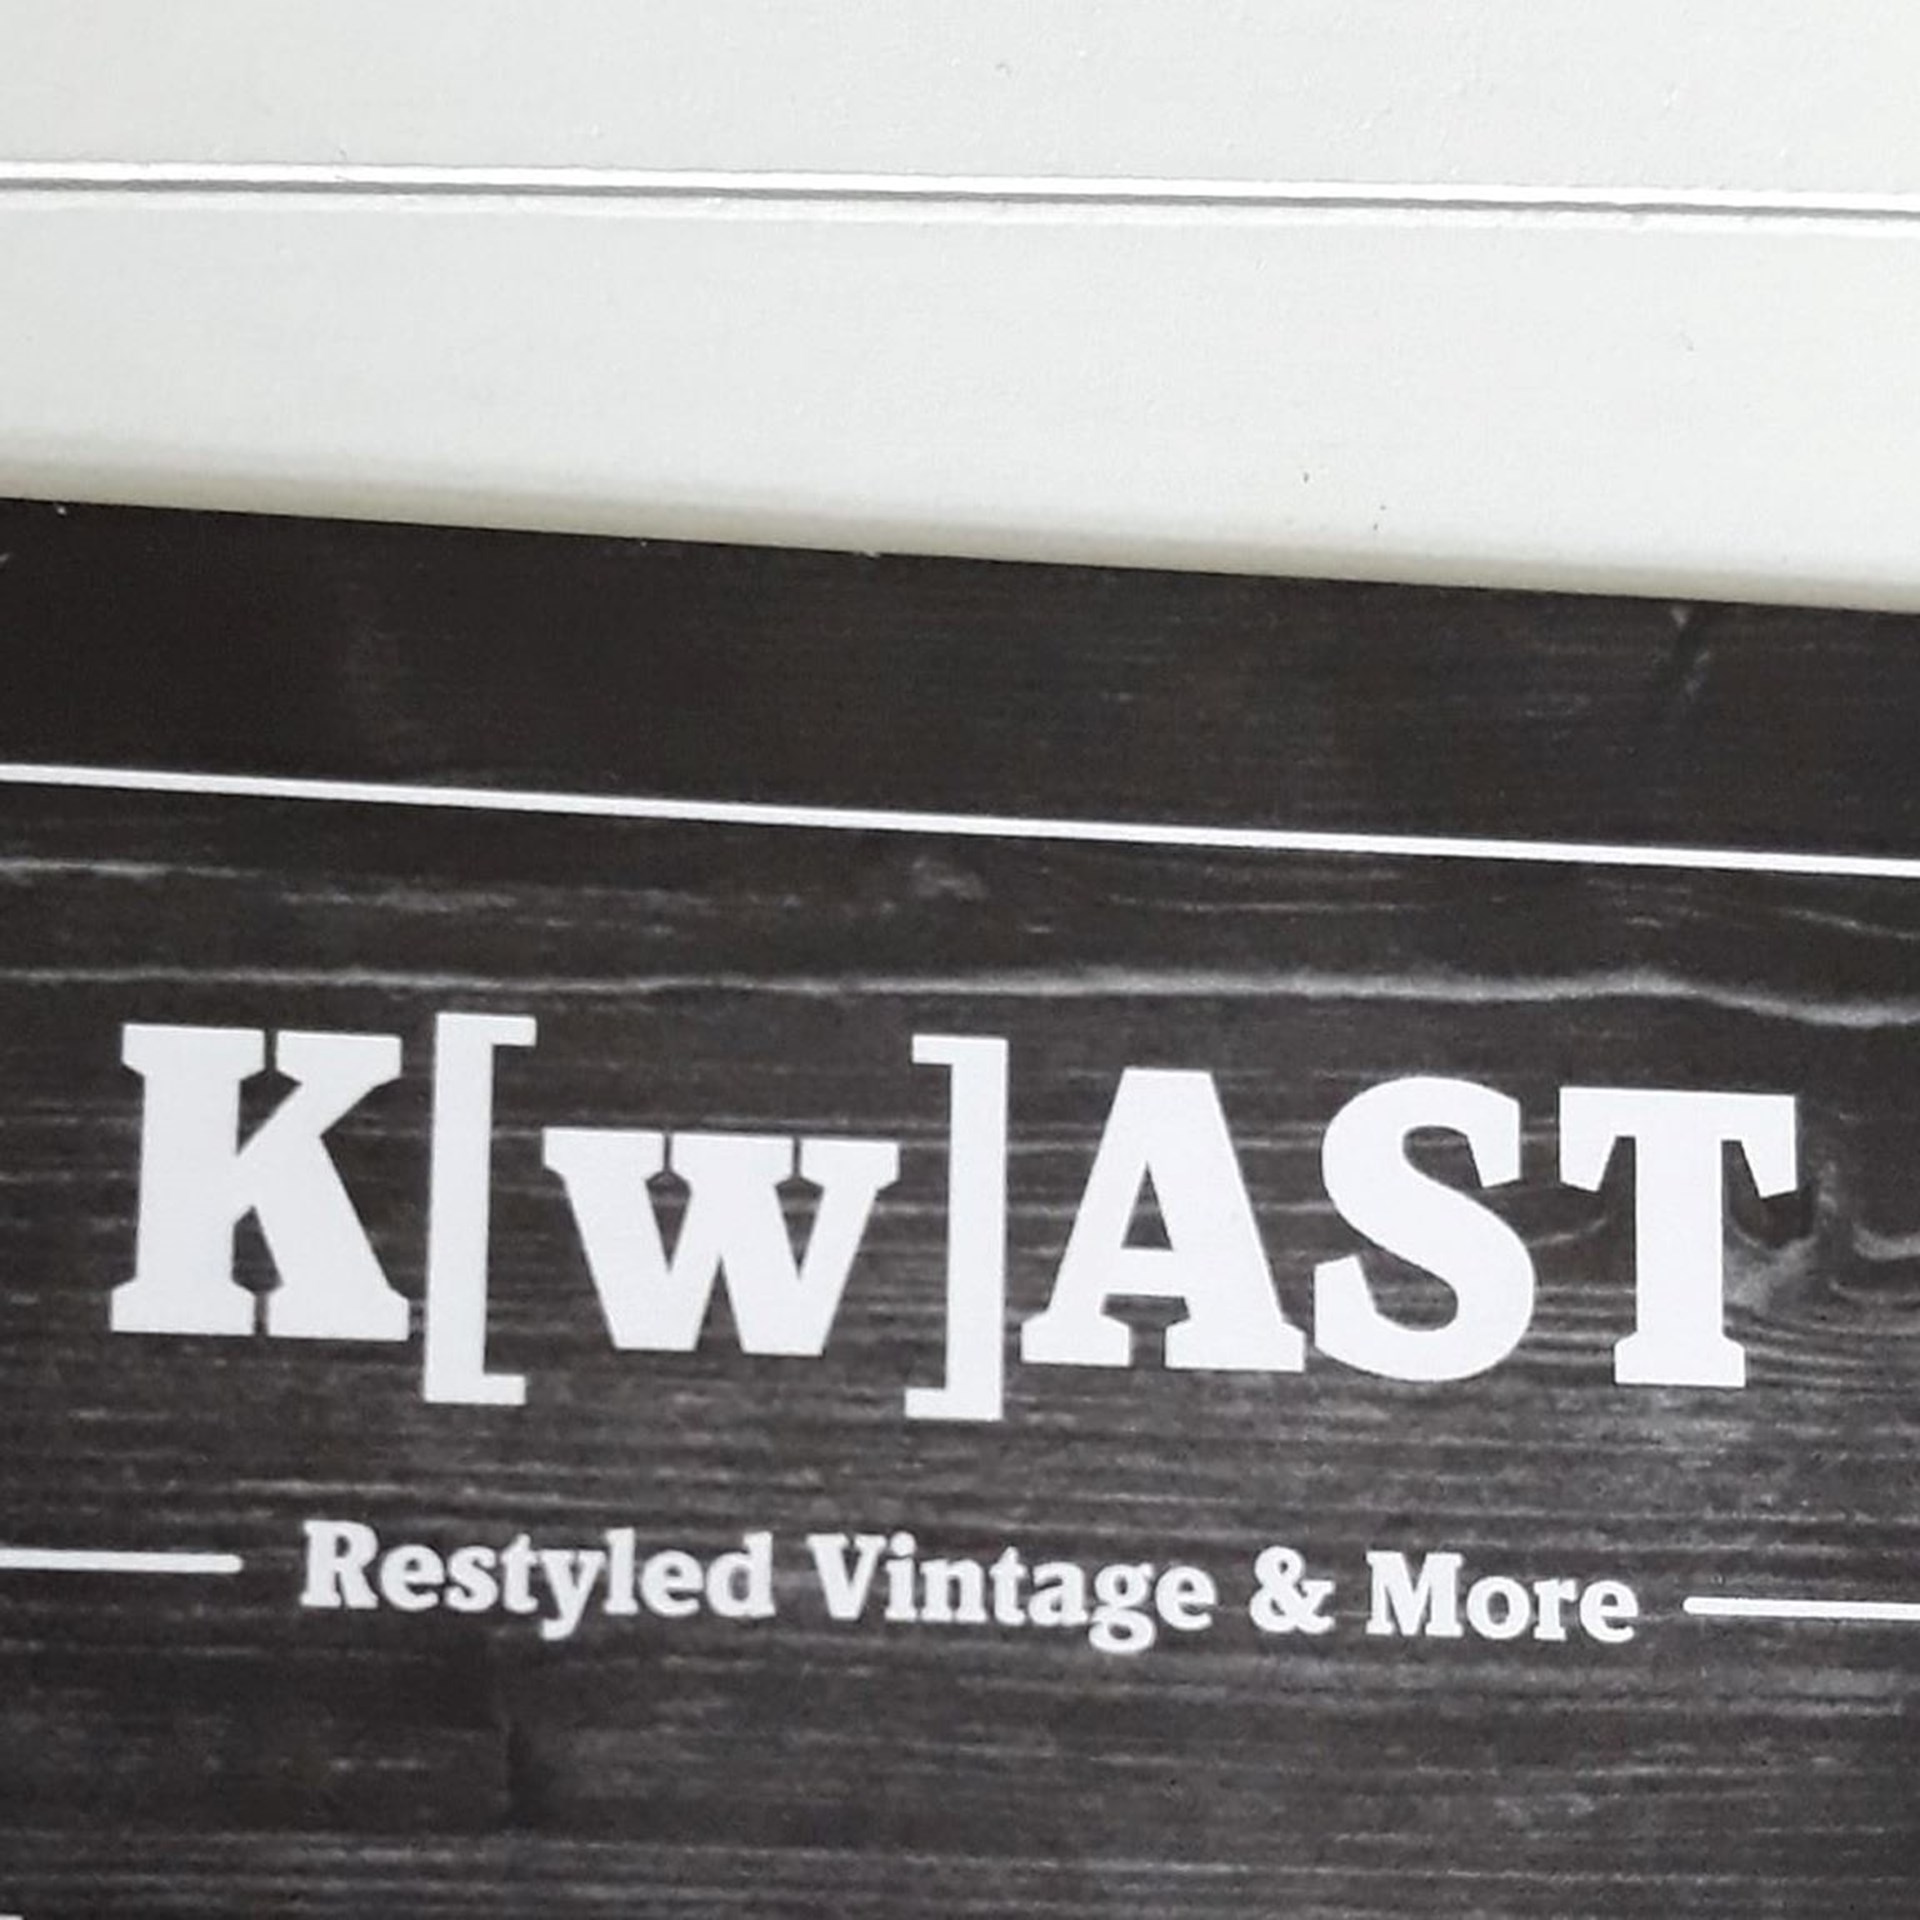 K[w]ast, restyled, vintage & more banner